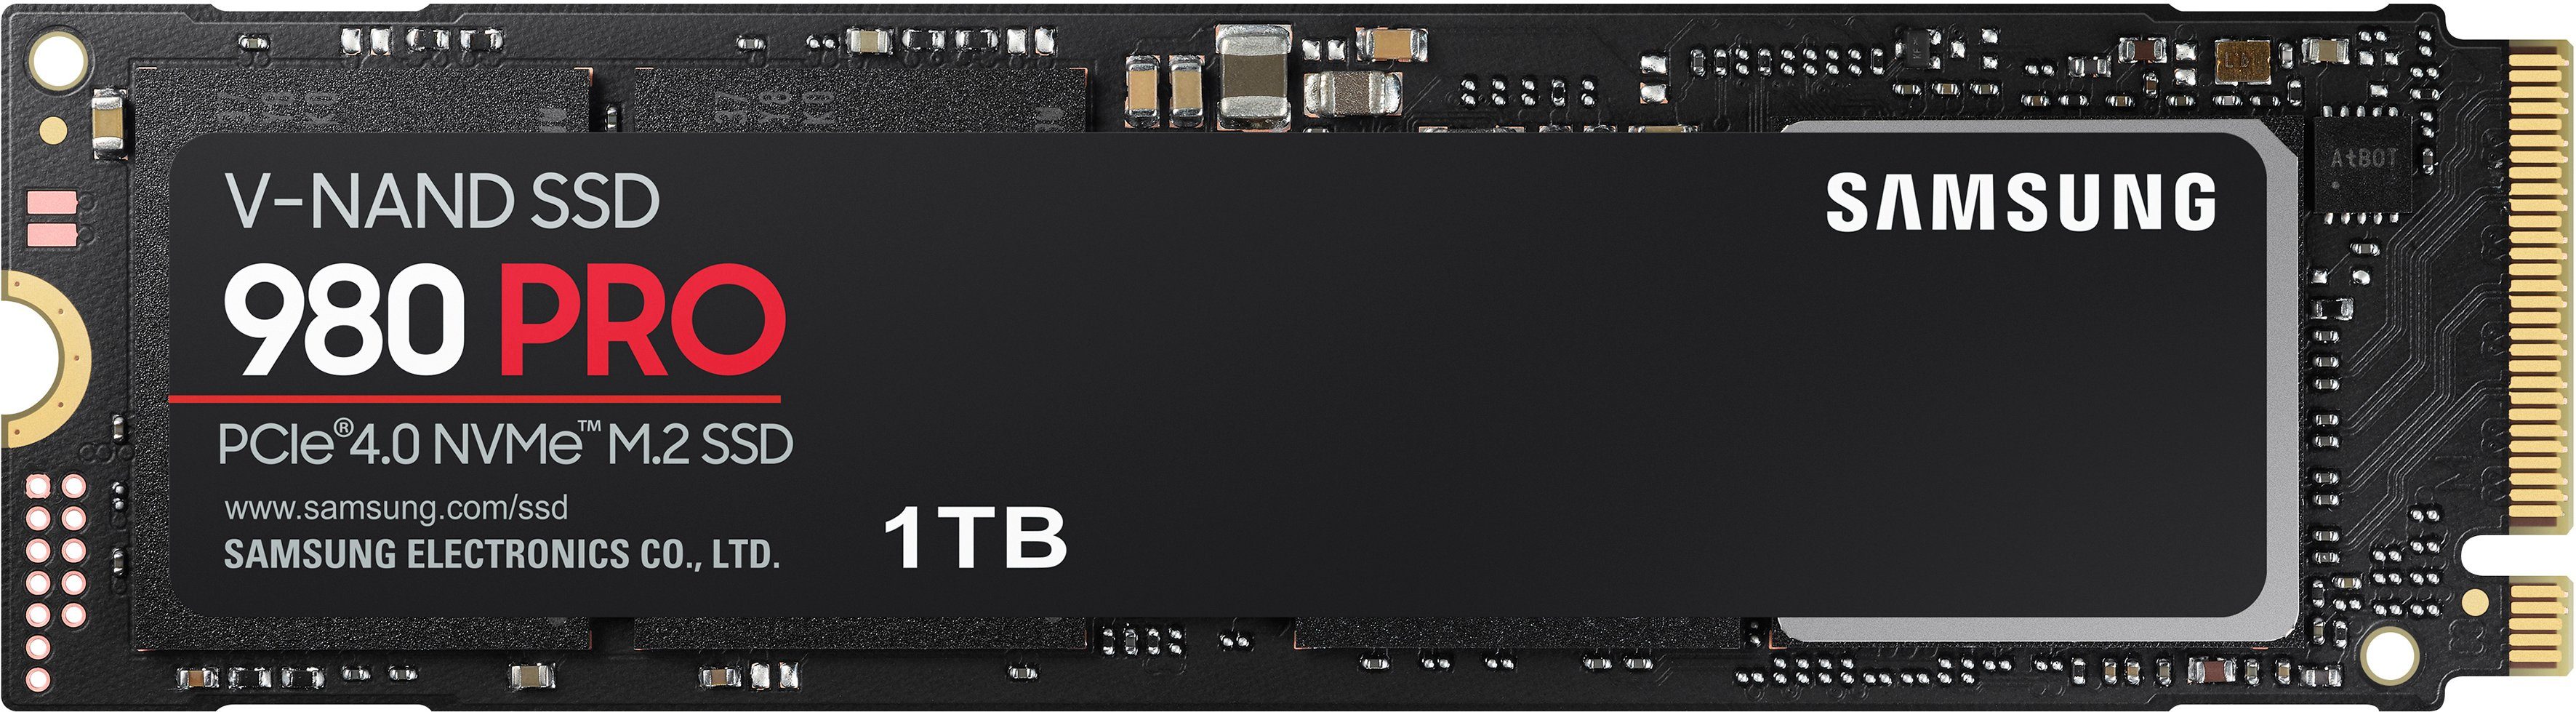 Samsung 980 PRO interne SSD MB/S Lesegeschwindigkeit, Schreibgeschwindigkeit, PCIe® 5000 kompatibel, TB) 7000 M.2 MB/S (1 Playstation 4.0 5 NVMe™